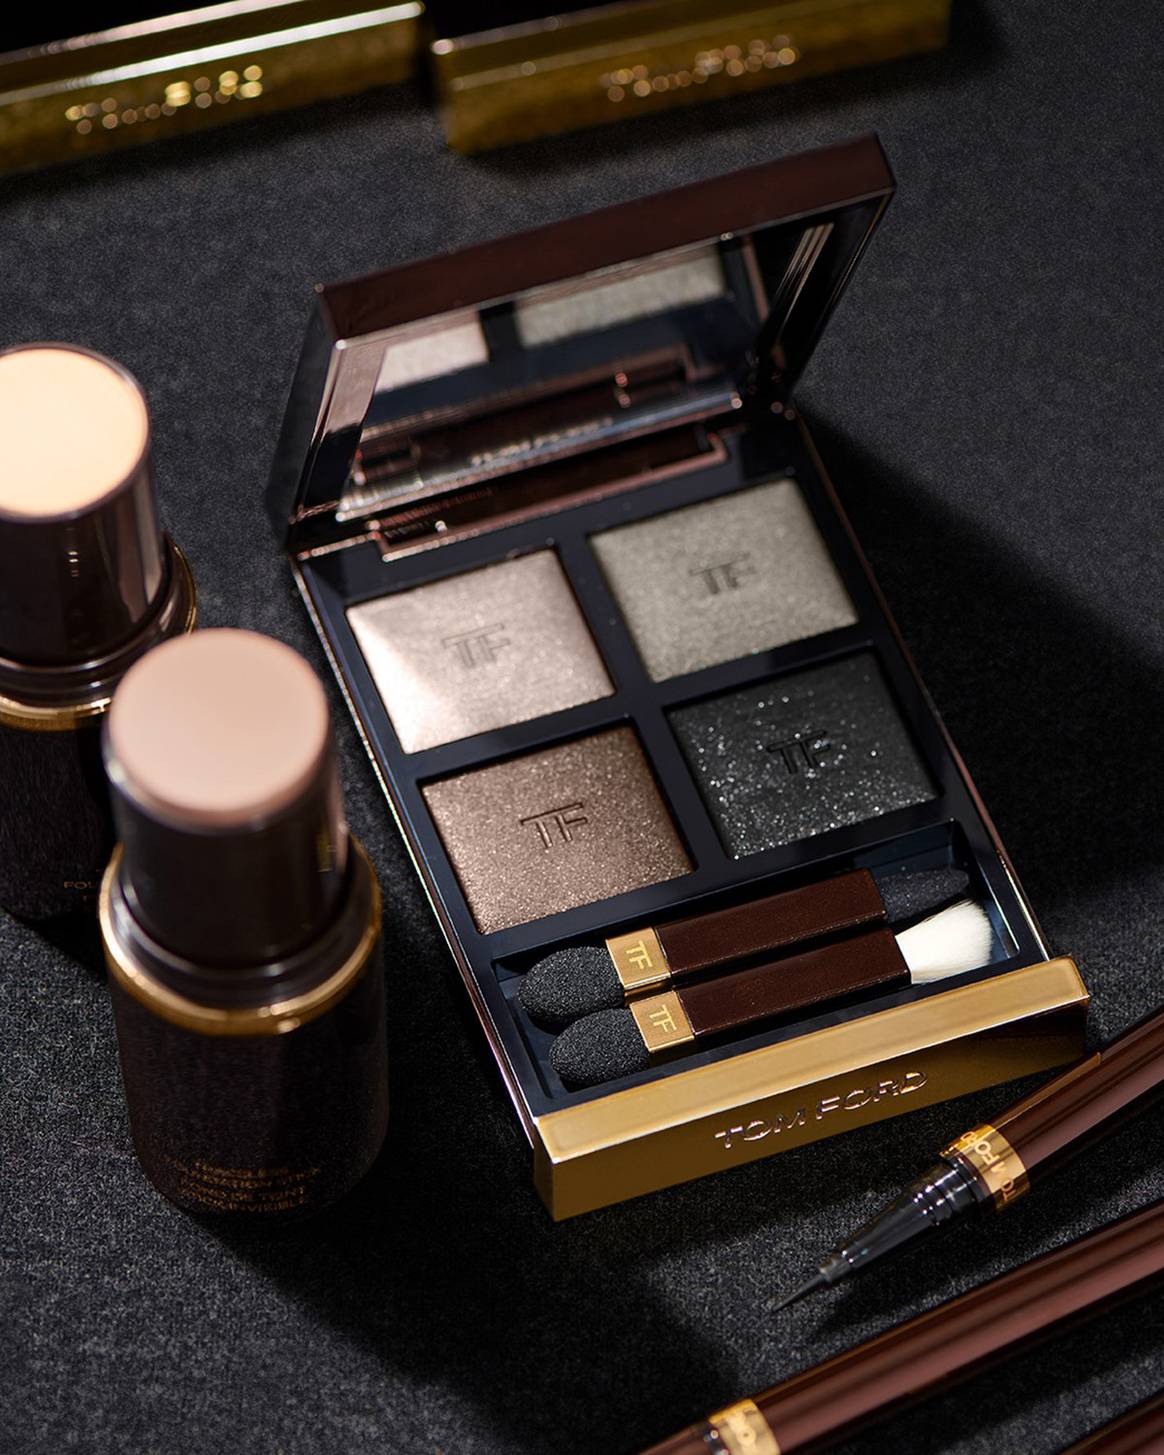 Photo Credits: Productos de maquillaje de la línea “Beauty” de Tom Ford desarrollada por Estée Lauder. Tom Ford, página oficial de Facebook.